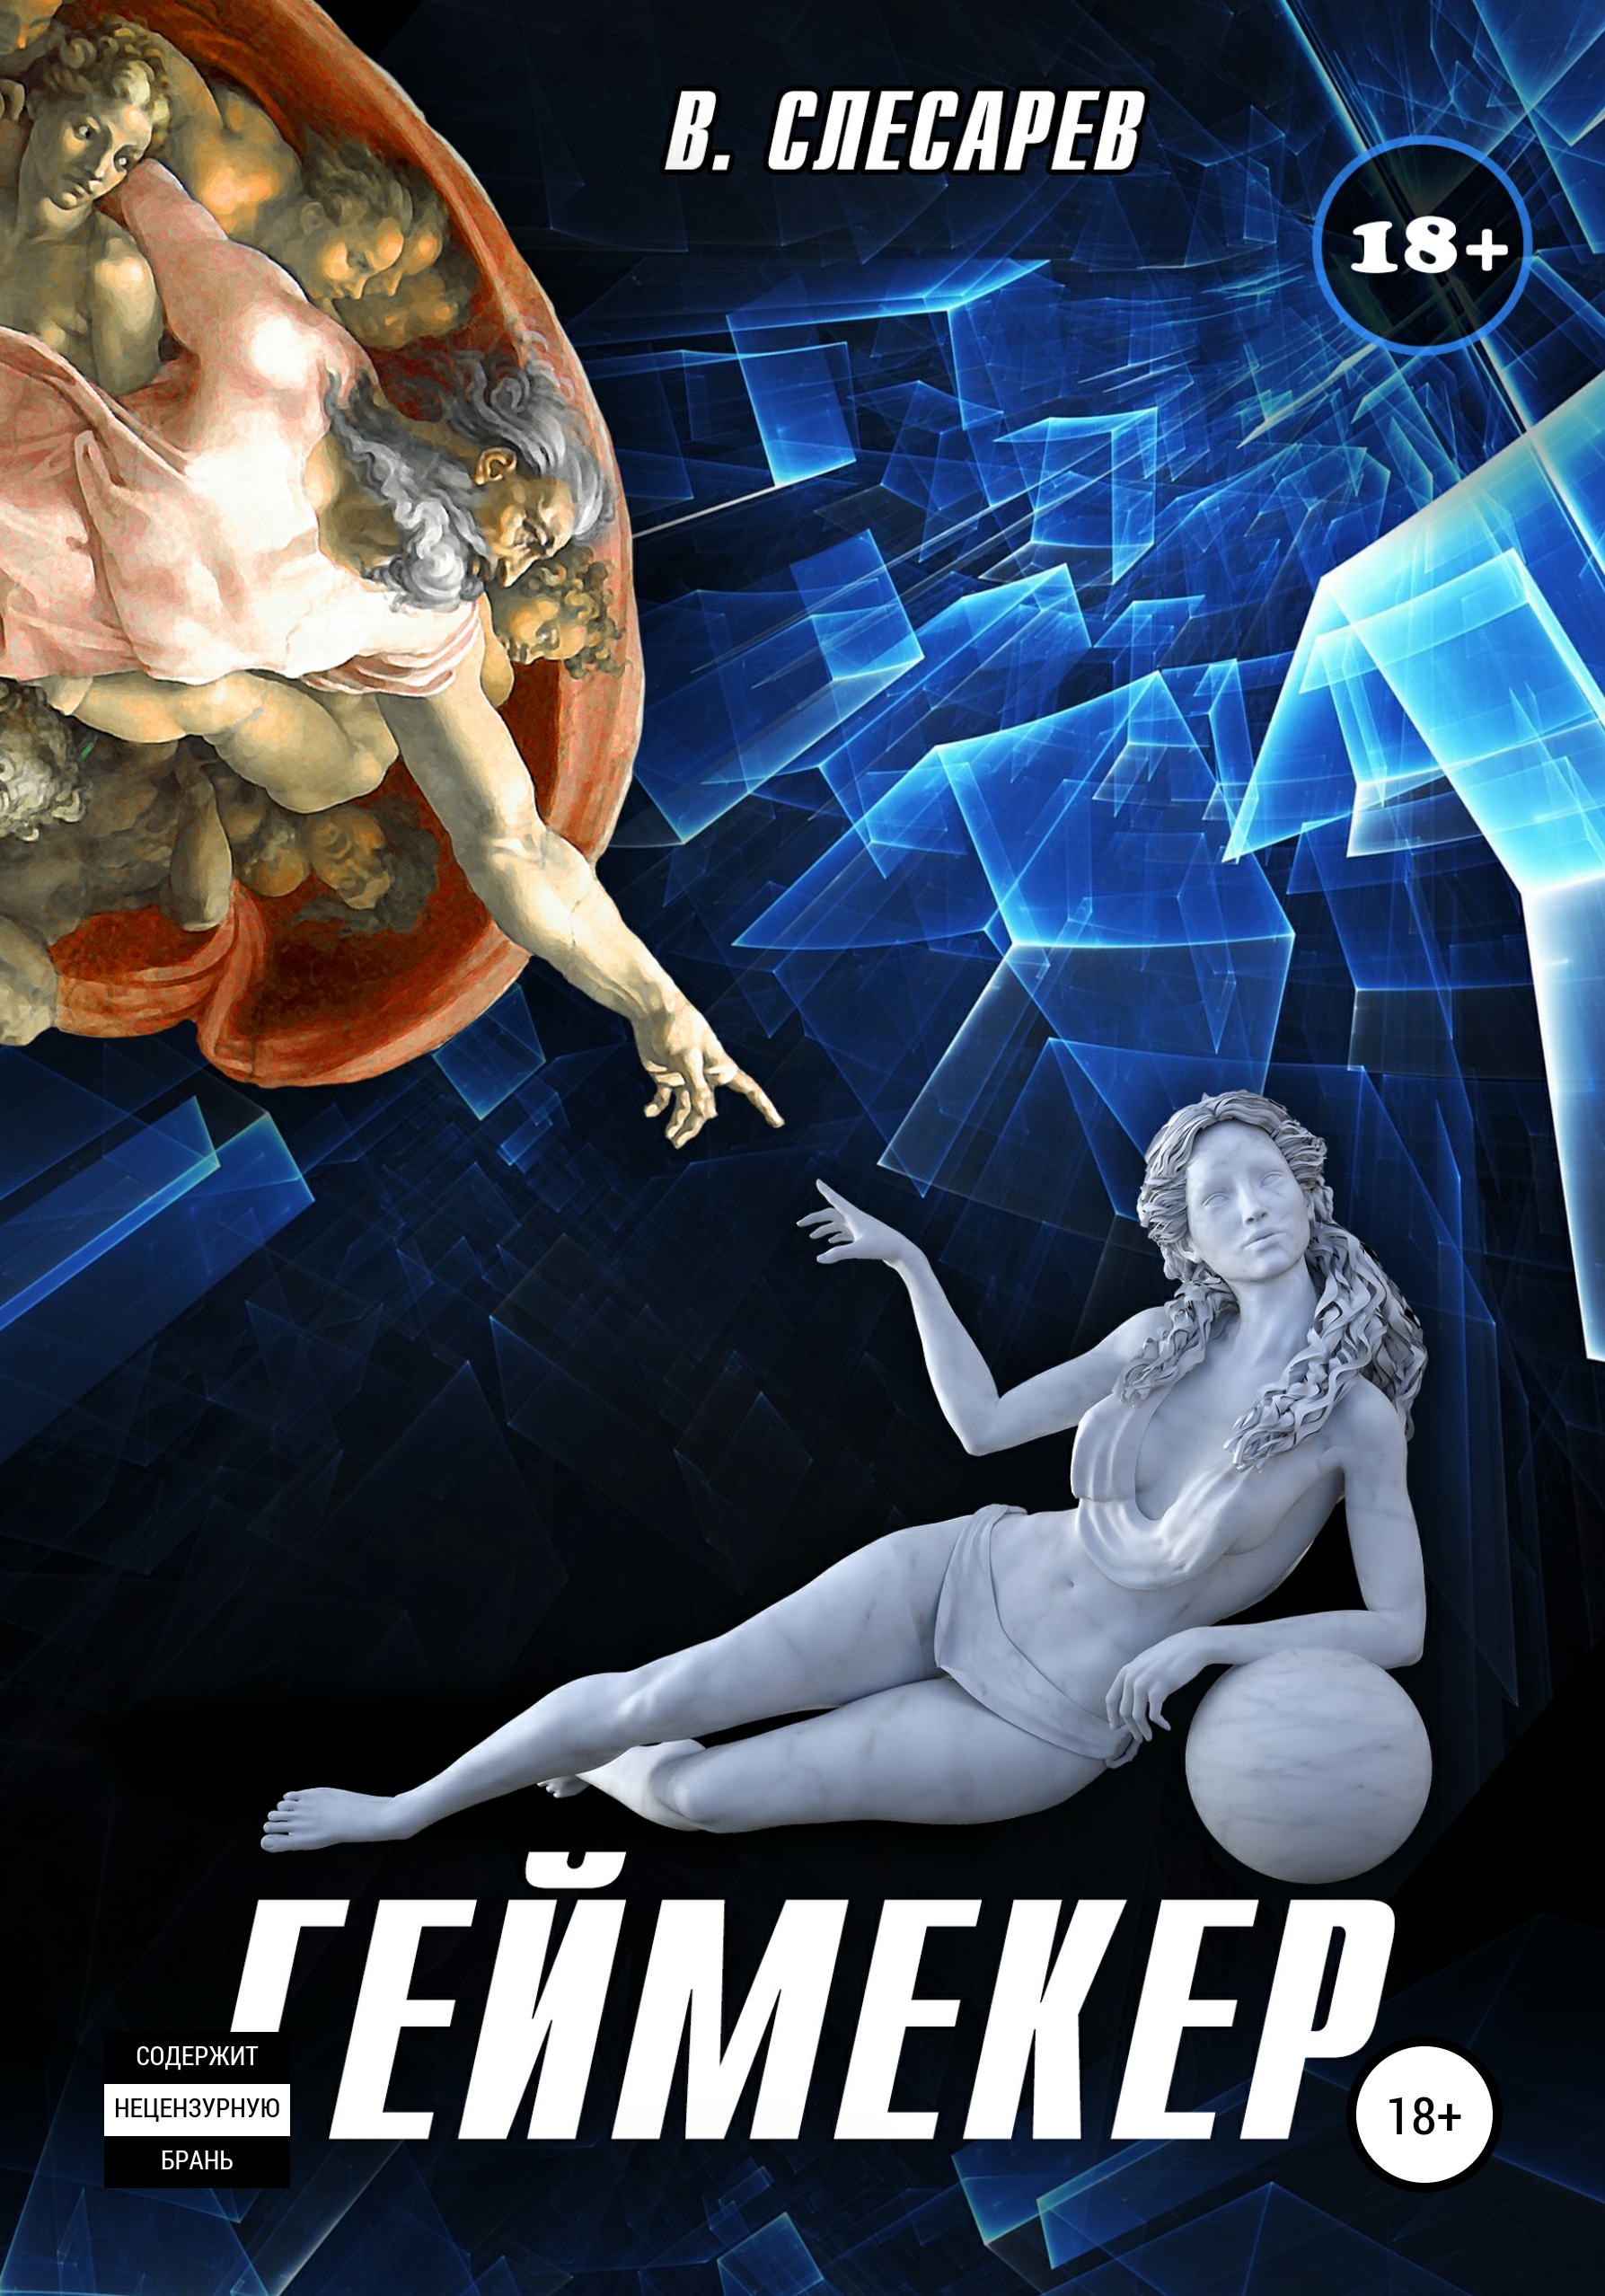 Книга  Геймекер созданная В. Слесарев может относится к жанру интернет, книги о приключениях, эротическая литература. Стоимость электронной книги Геймекер с идентификатором 53453763 составляет  руб.